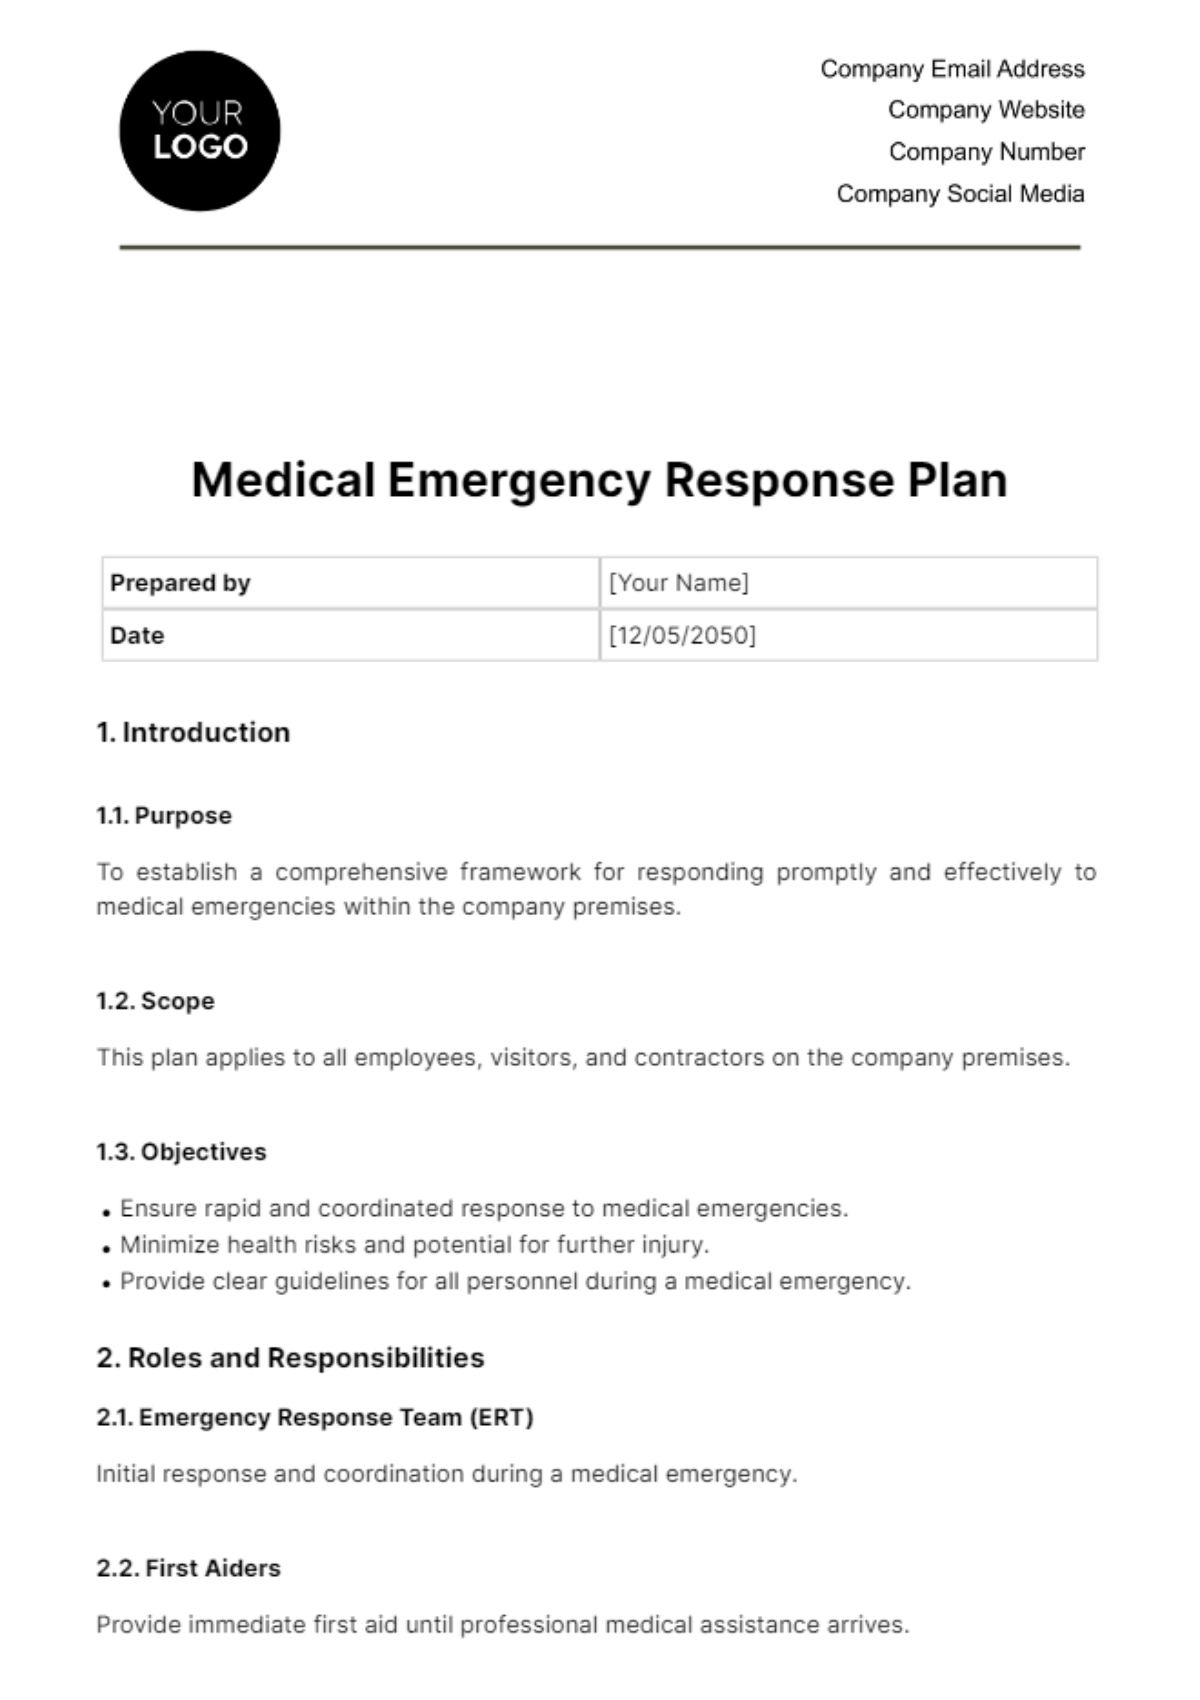 Free Medical Emergency Response Plan Template